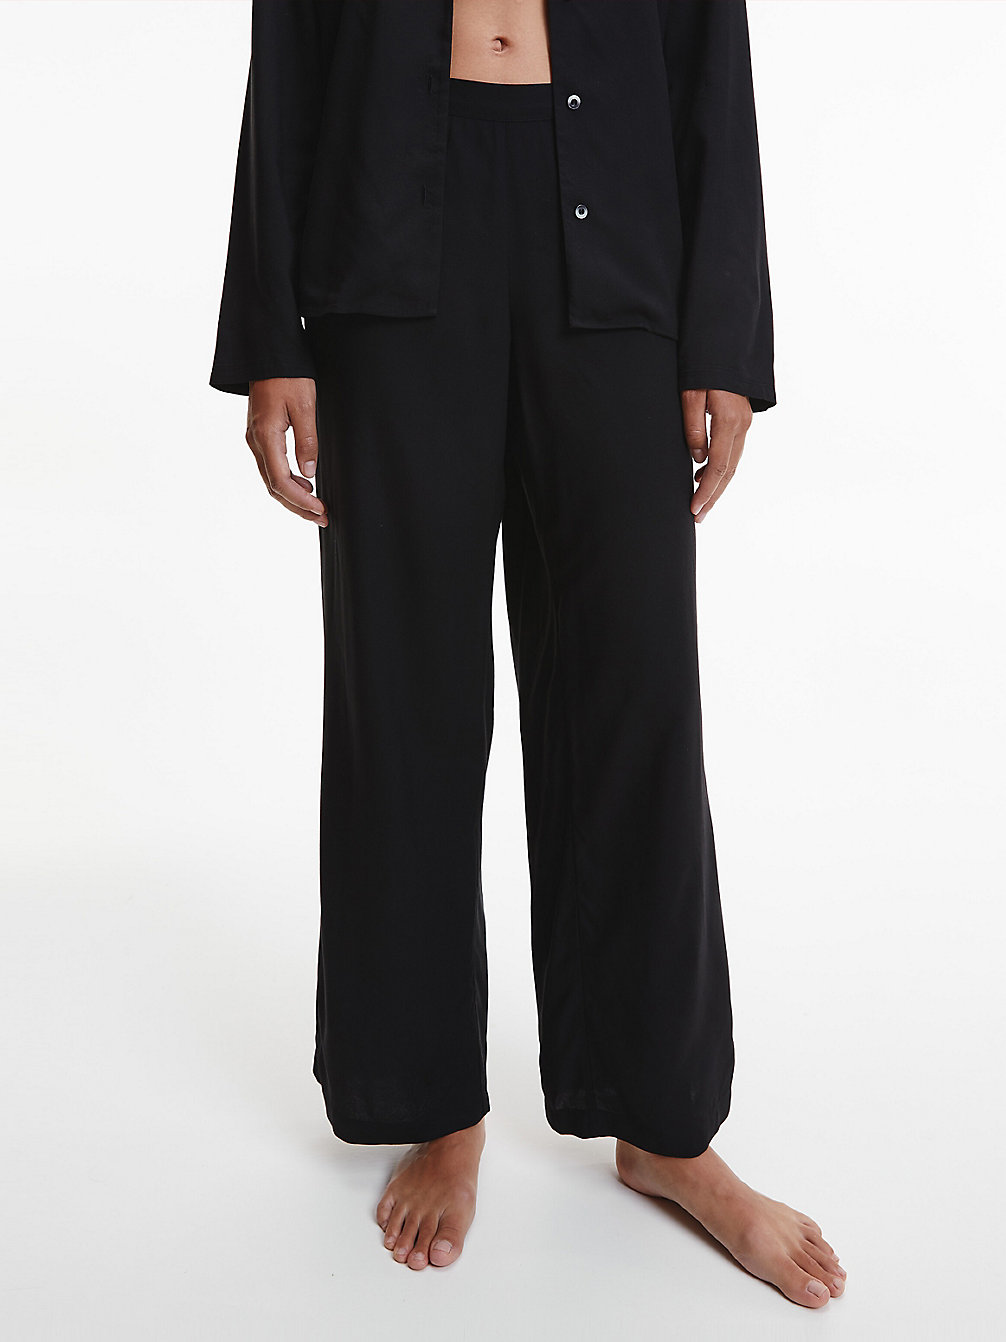 BLACK > Spodnie Od Piżamy > undefined Kobiety - Calvin Klein